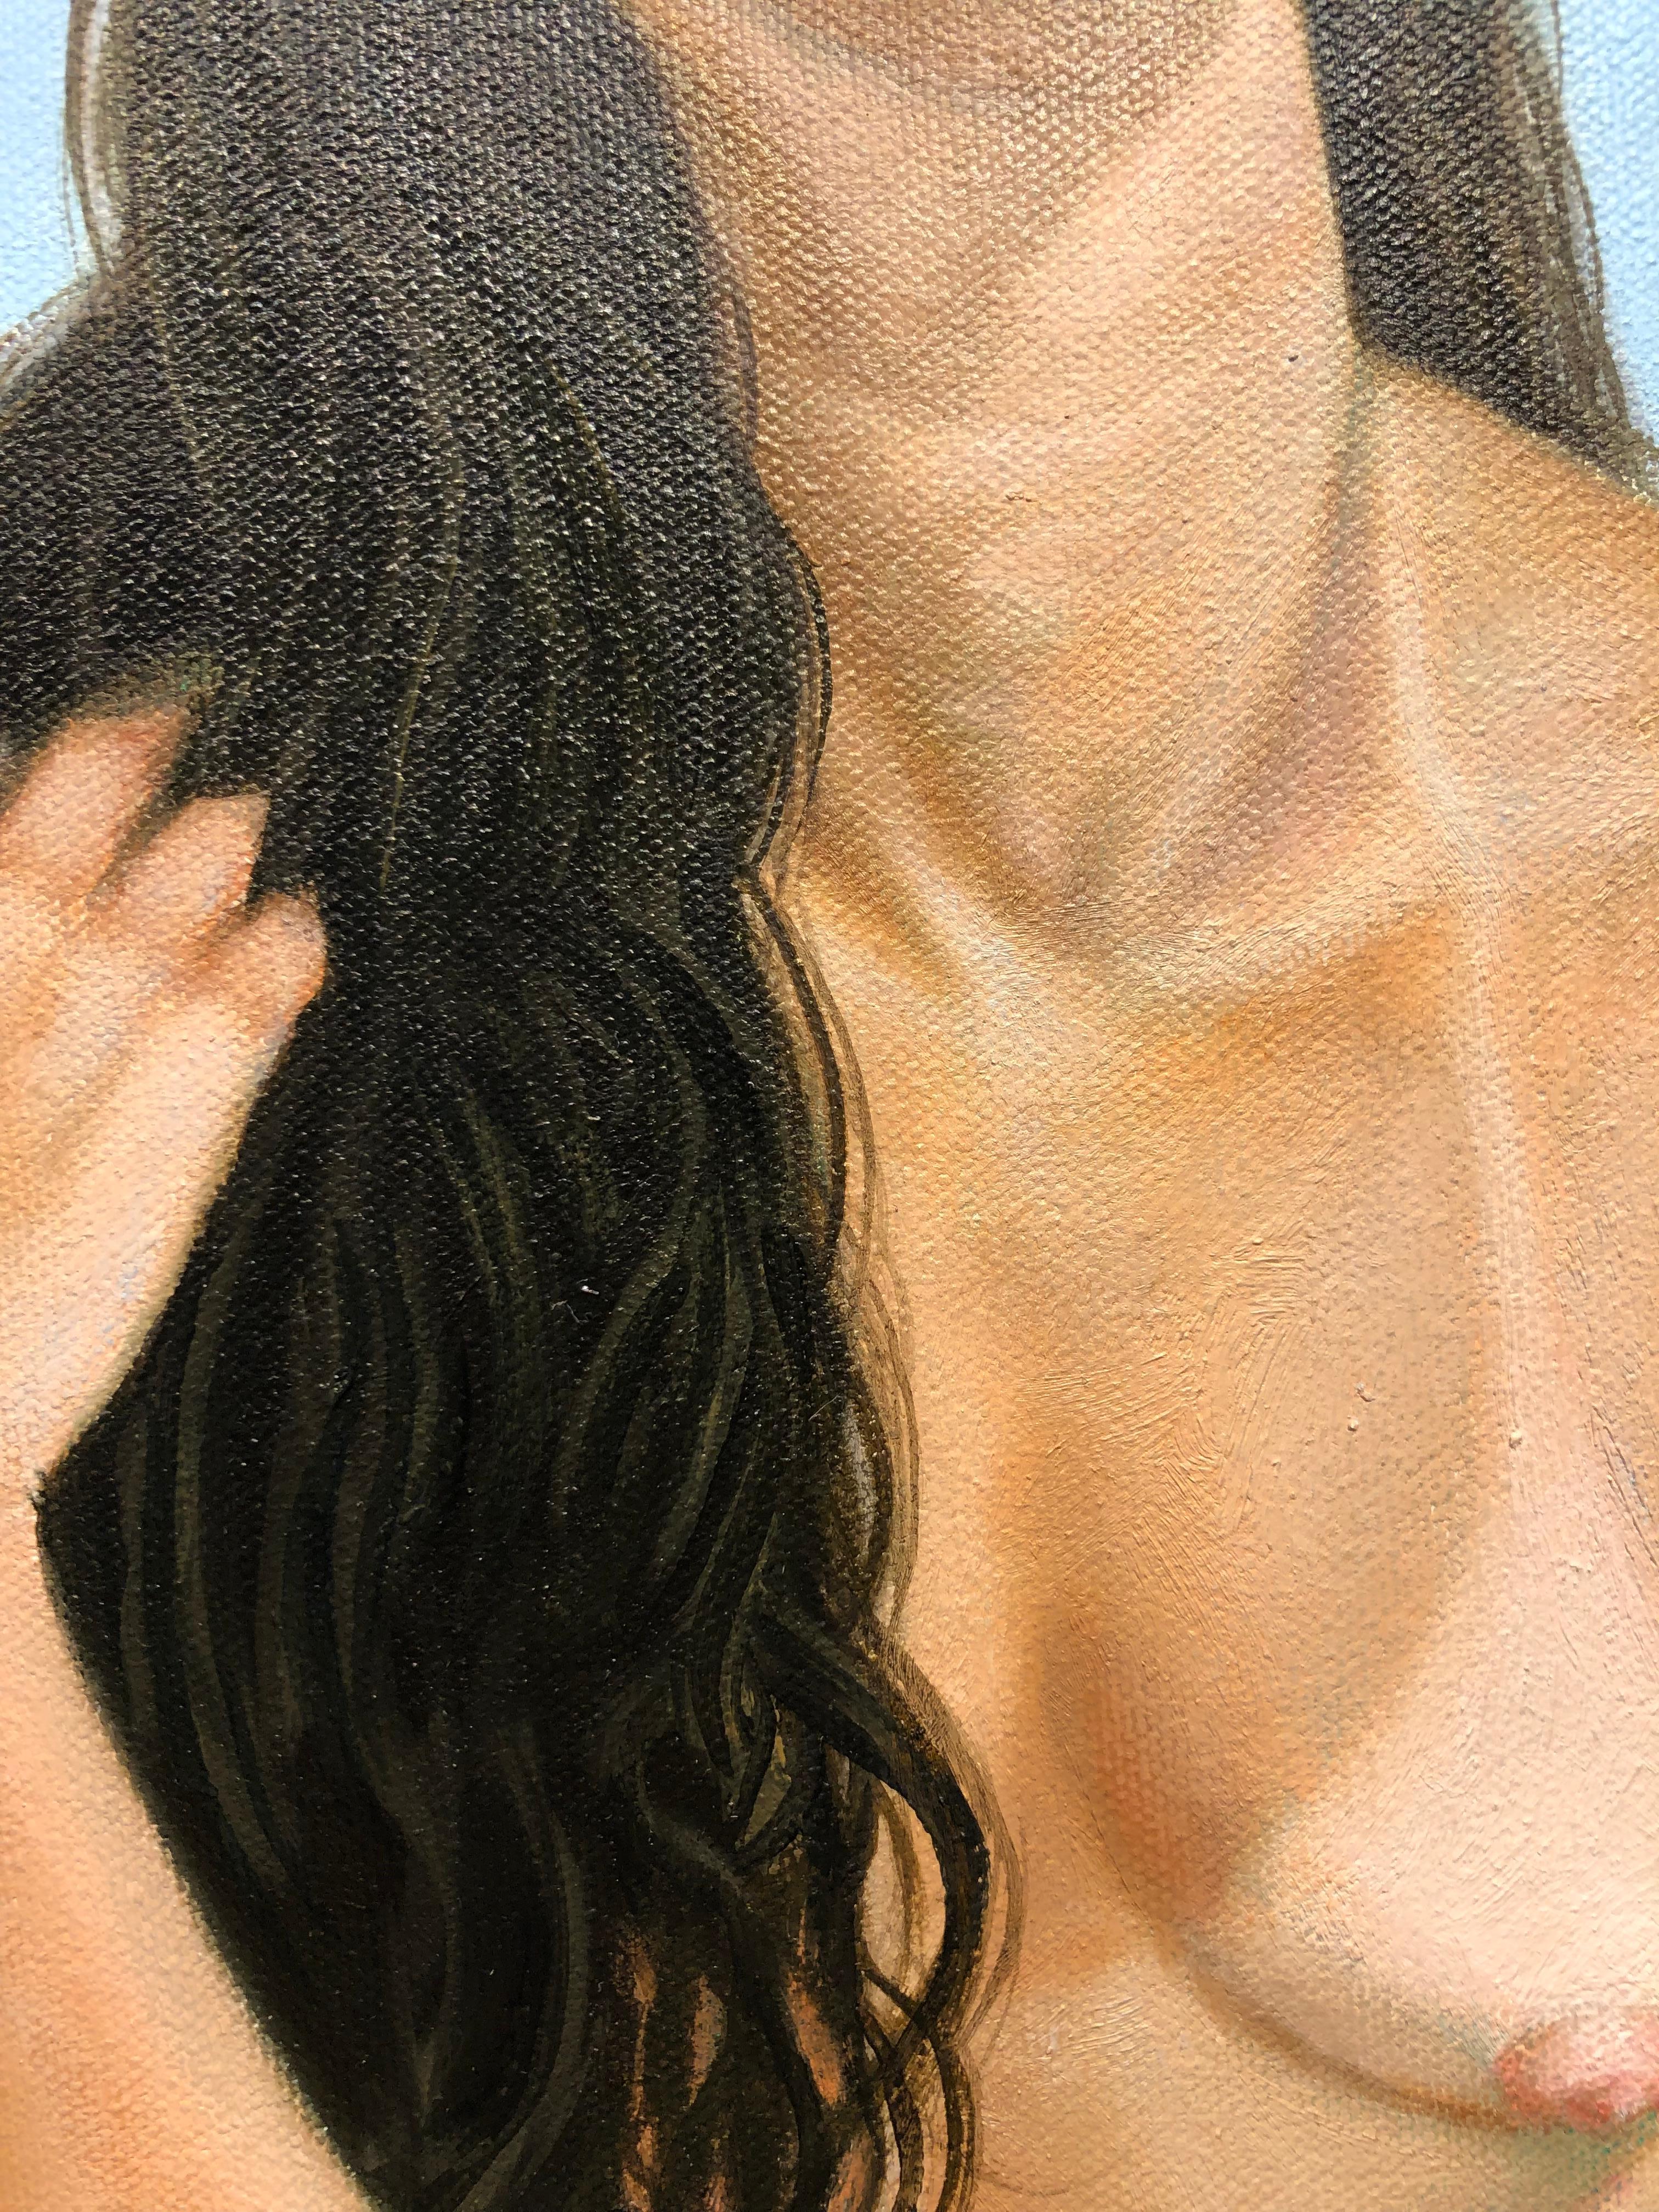 Comfort Zone, Schaukelnde weibliche Figur in Akt, Schaukeln nach oben, Öl auf Leinwand (Zeitgenössisch), Painting, von Juan Barragán